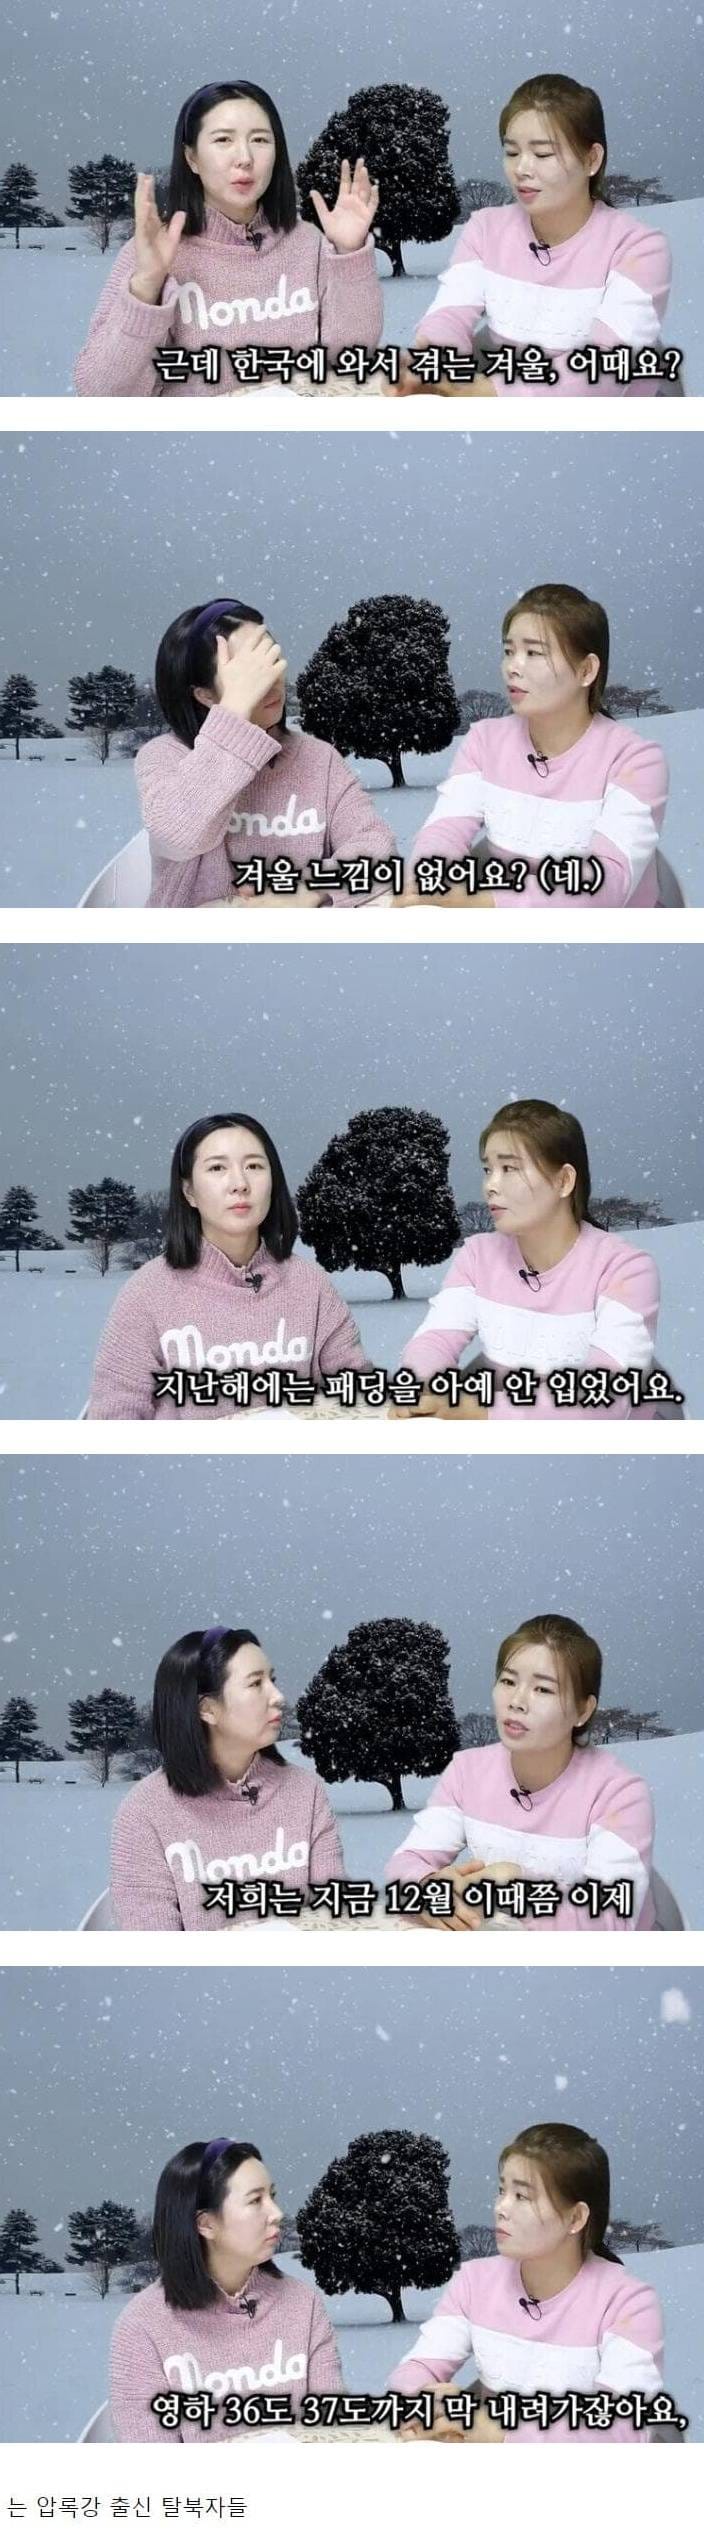 한국의 겨울이 뭐가 춥냐는 사람